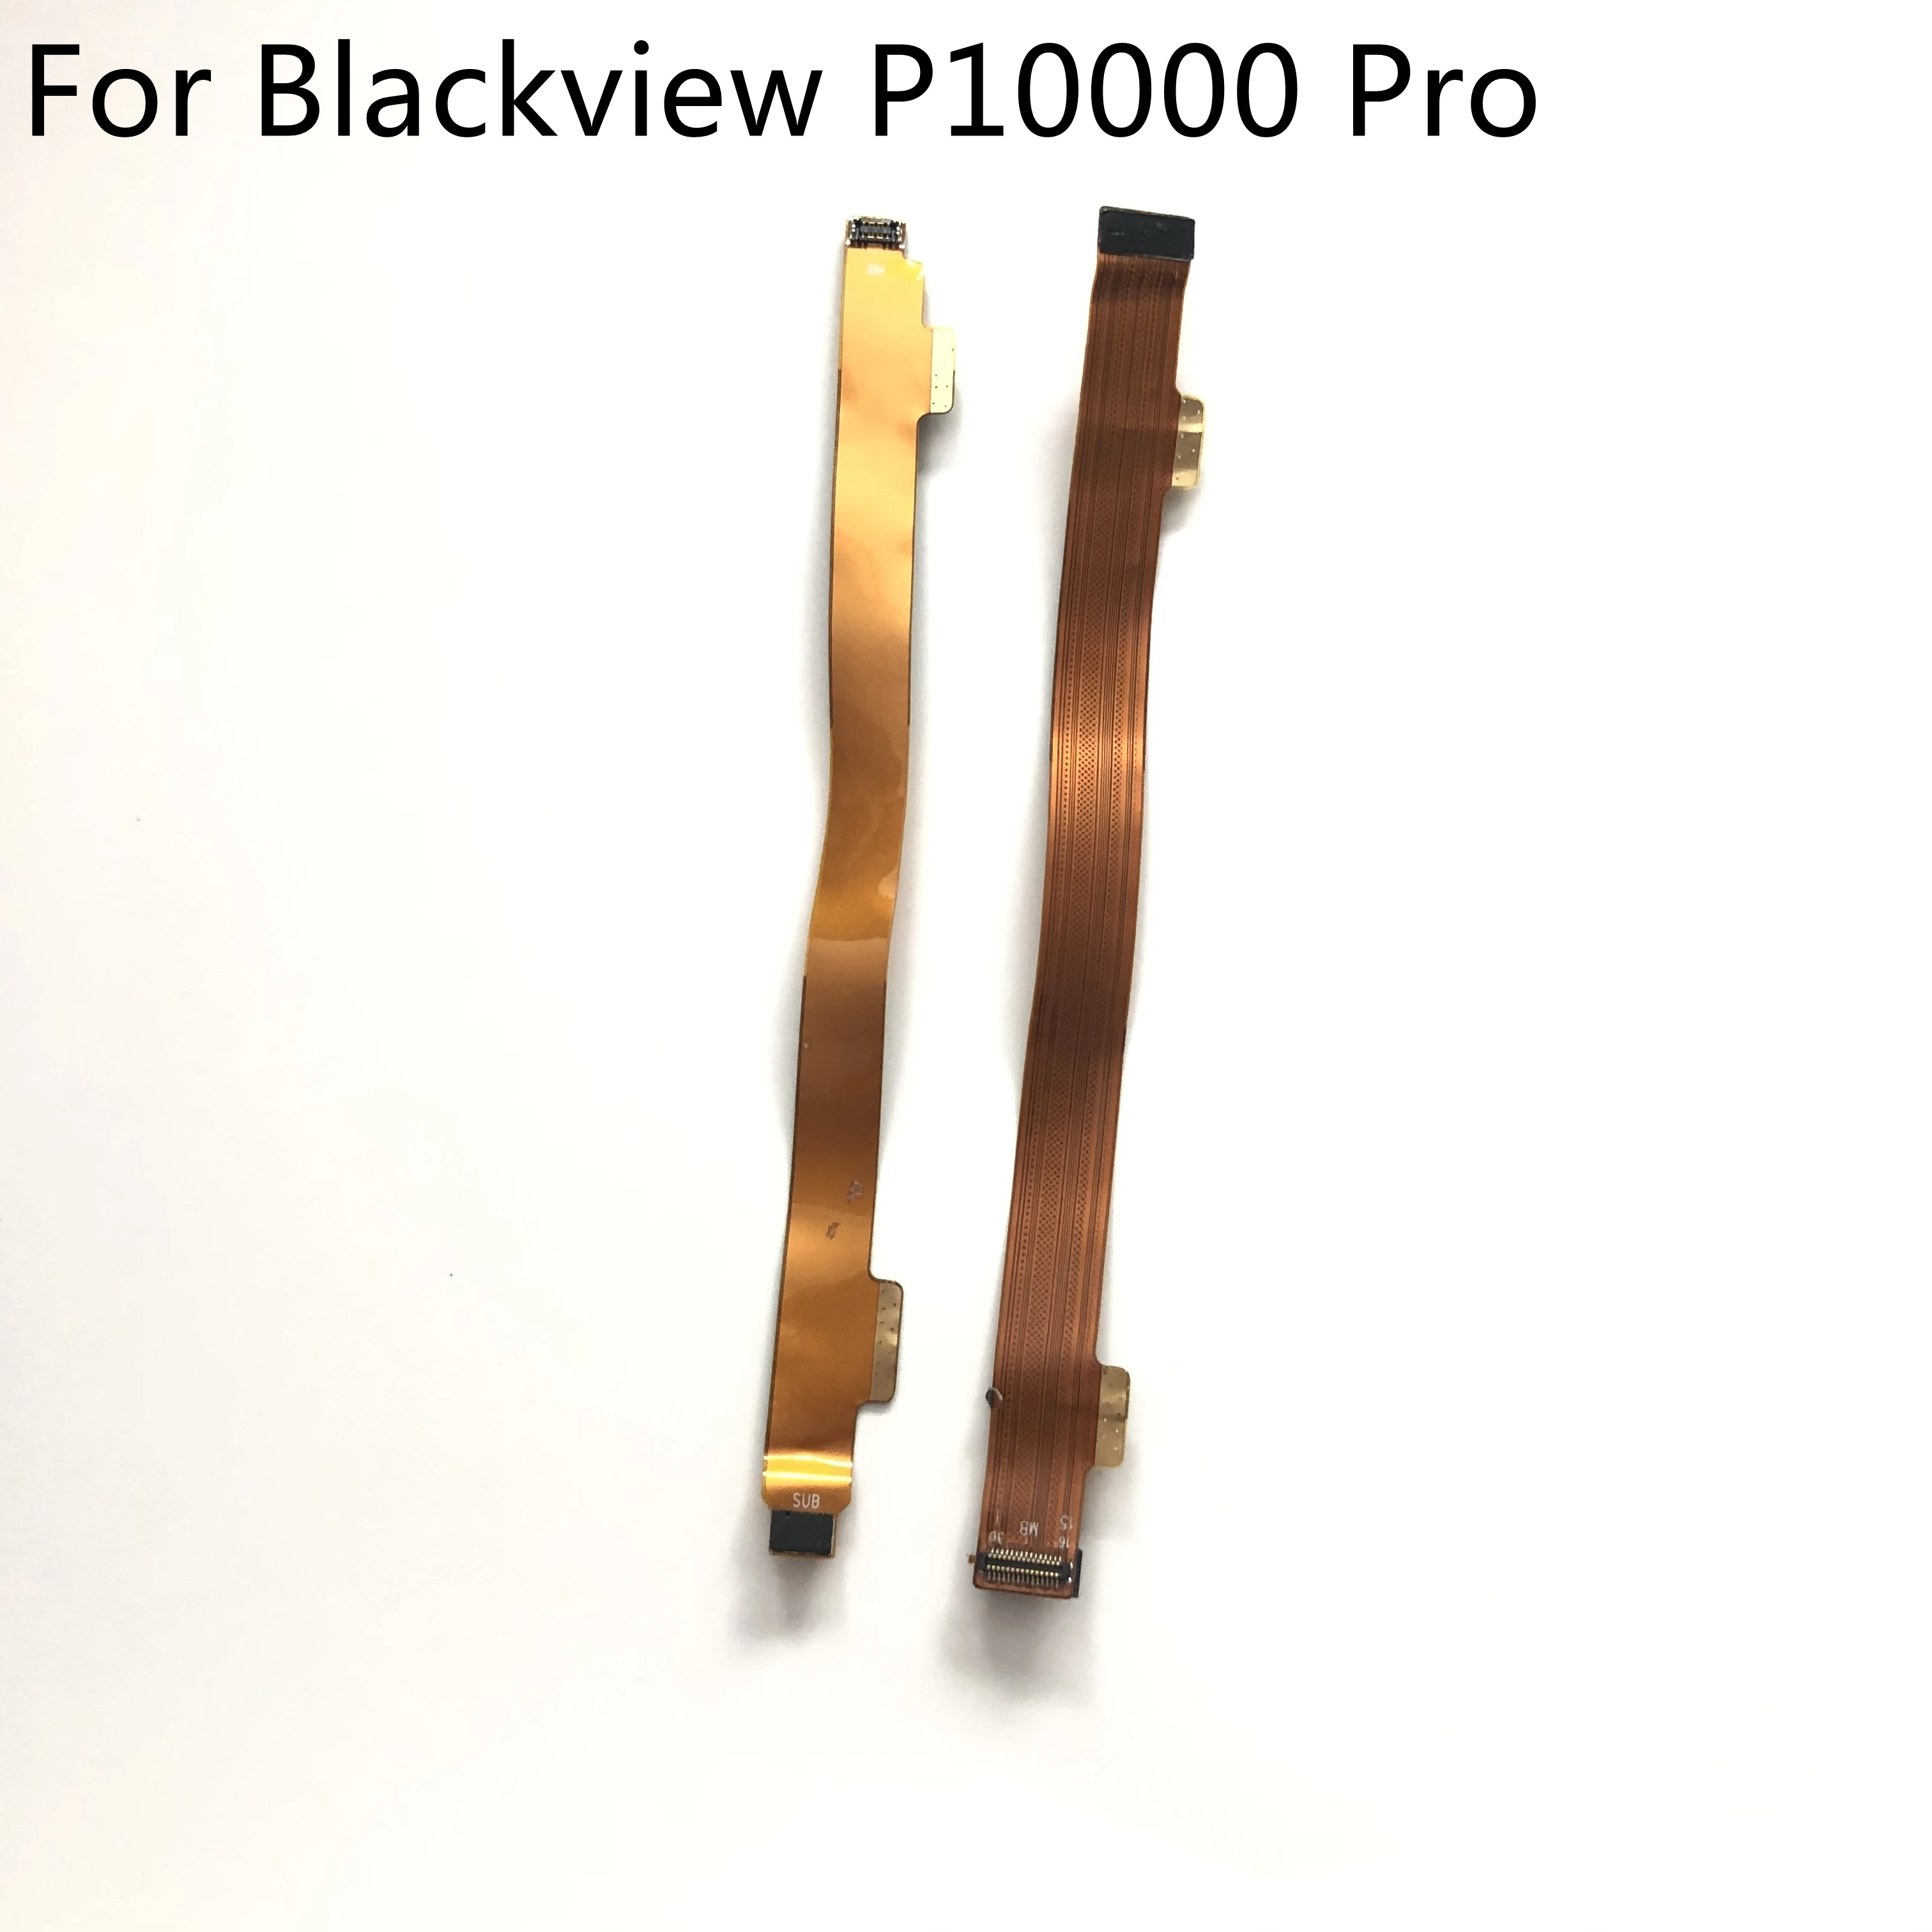 Blackview P10000 Pro Kullanılan Orijinal USB Şarj Kurulu Mot herboard FPC Blackview P10000 Pro MTK6763 2160x1080 Akıllı Telefon